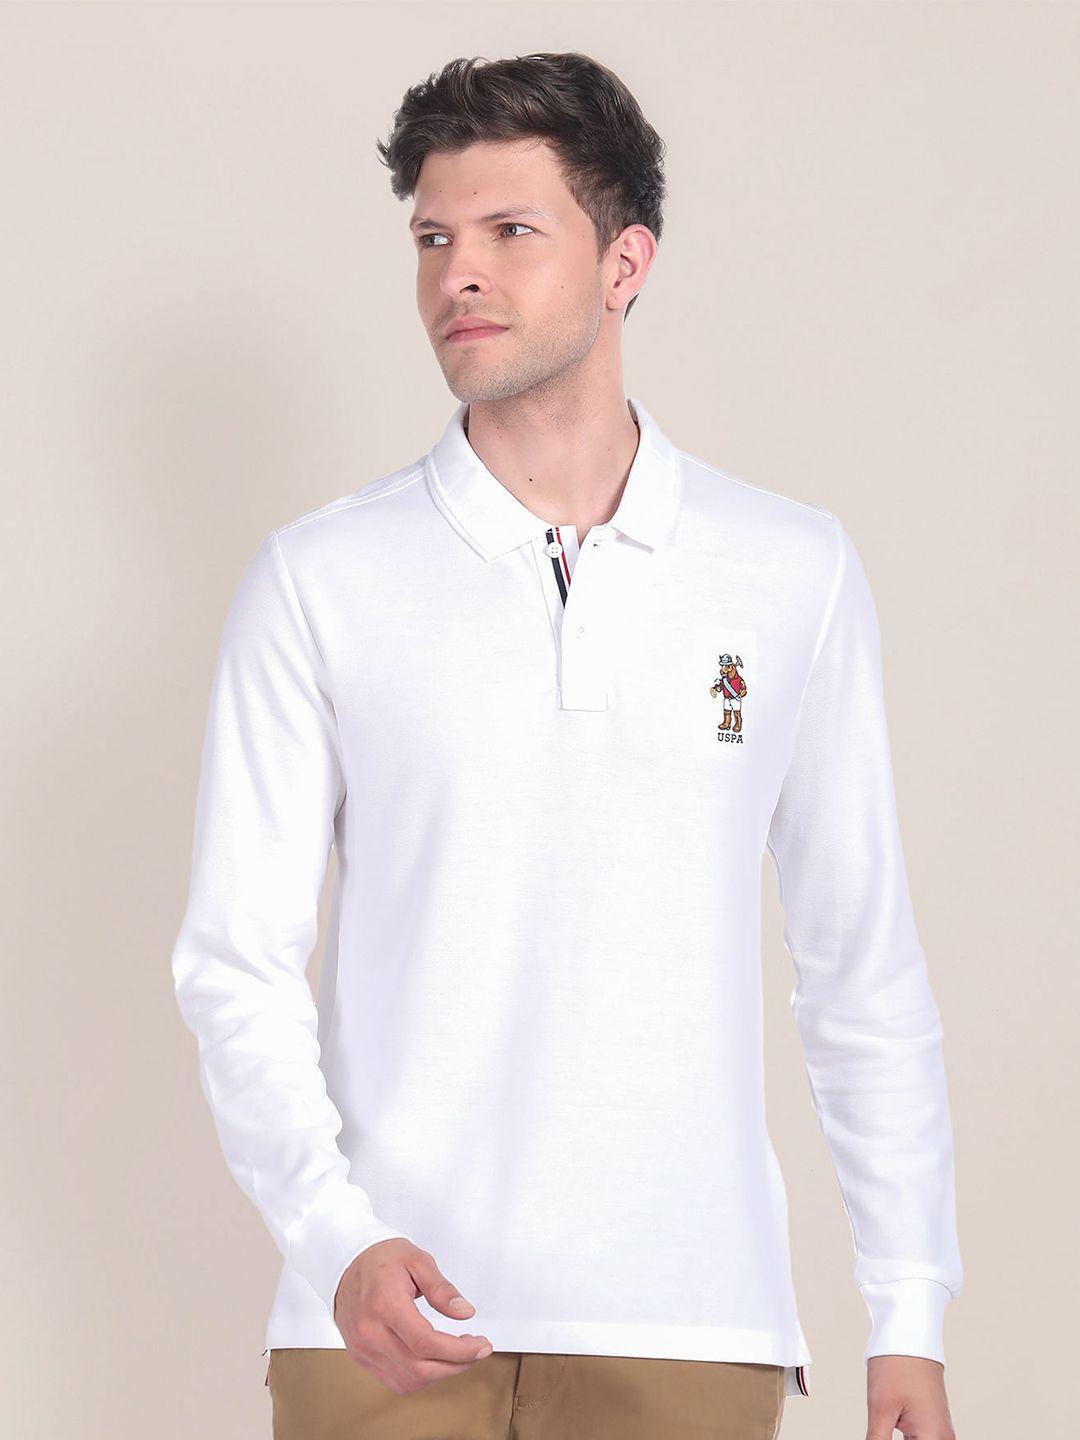 u.s. polo assn. polo collar long sleeves casual pure cotton t-shirt